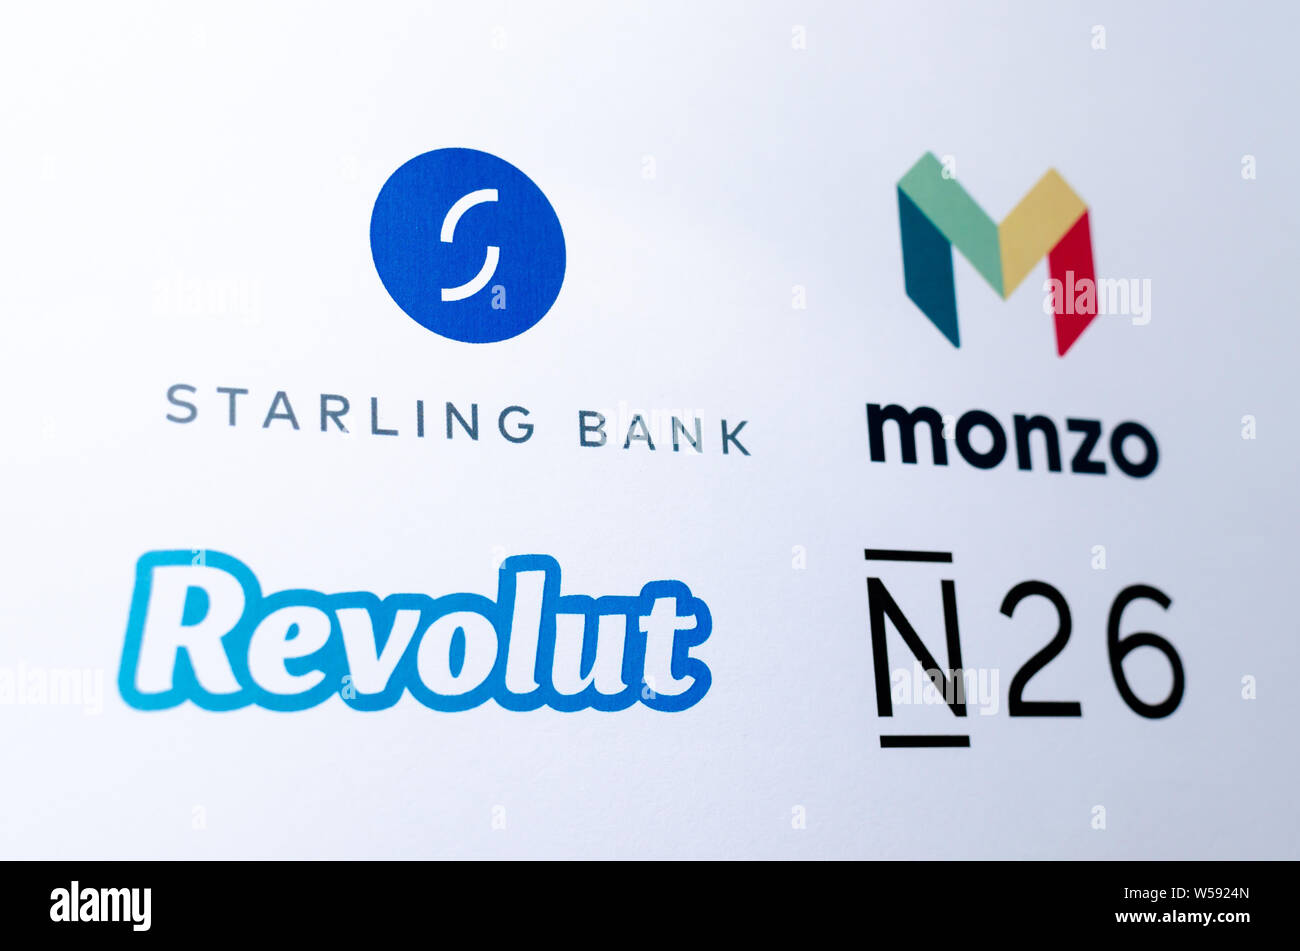 Logotipos de empresas compitiendo fintech que representa bancos virtuales: Monzo, Revolut Starling, banco, N26, impresa en papel. Foto de stock